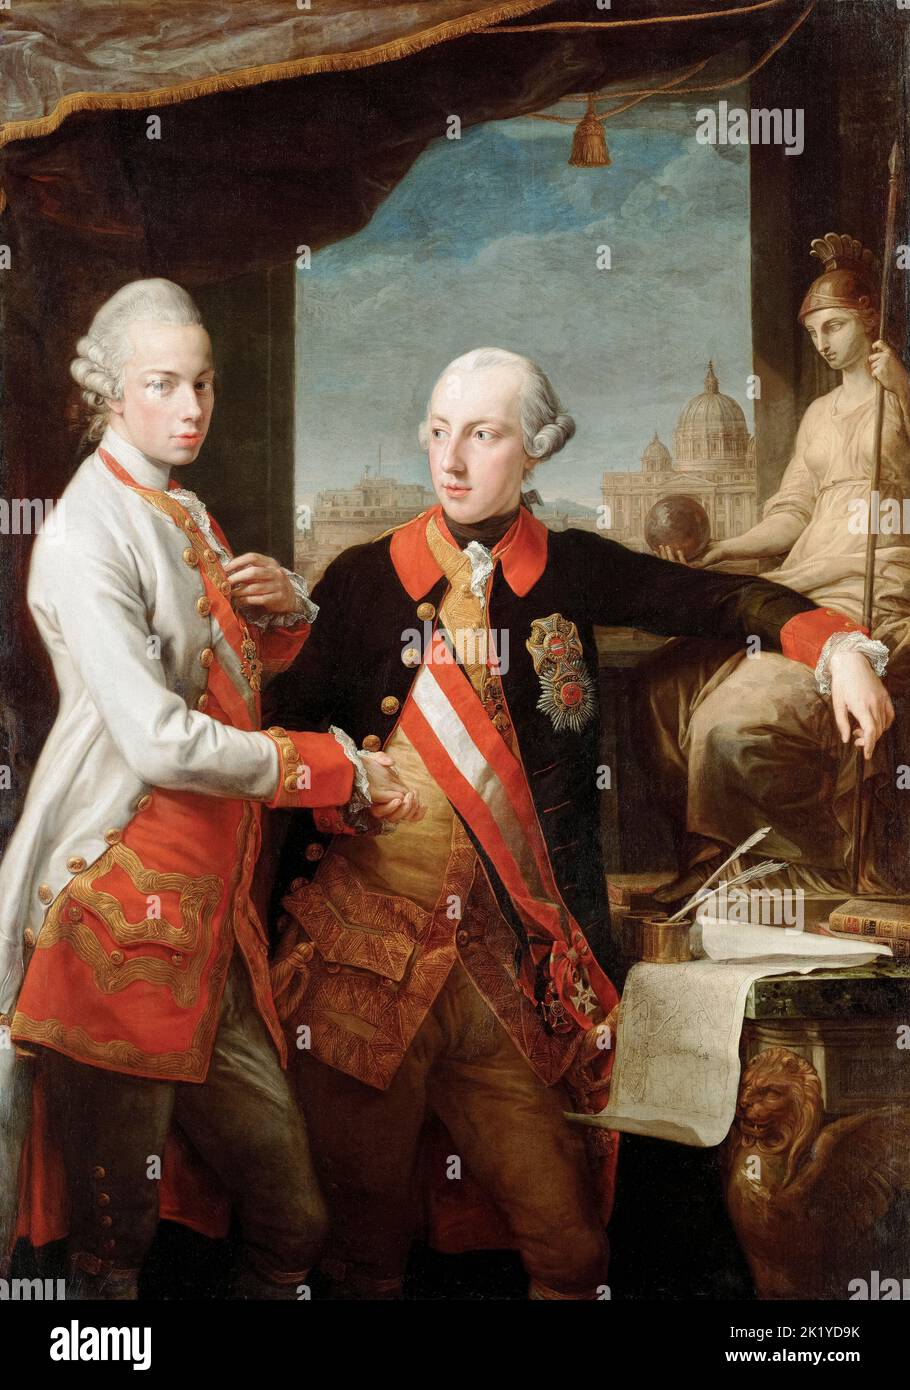 Giuseppe II (1741-1790), Imperatore Sacro Romano (1765-1790), con il fratello Pietro Leopoldo (1747-1792), Granduca di Toscana (1765-1790), poi Leopoldo II, Imperatore Sacro Romano (1790-1792), dipinto a olio su tela di Pompeo Batoni, 1769 Foto Stock